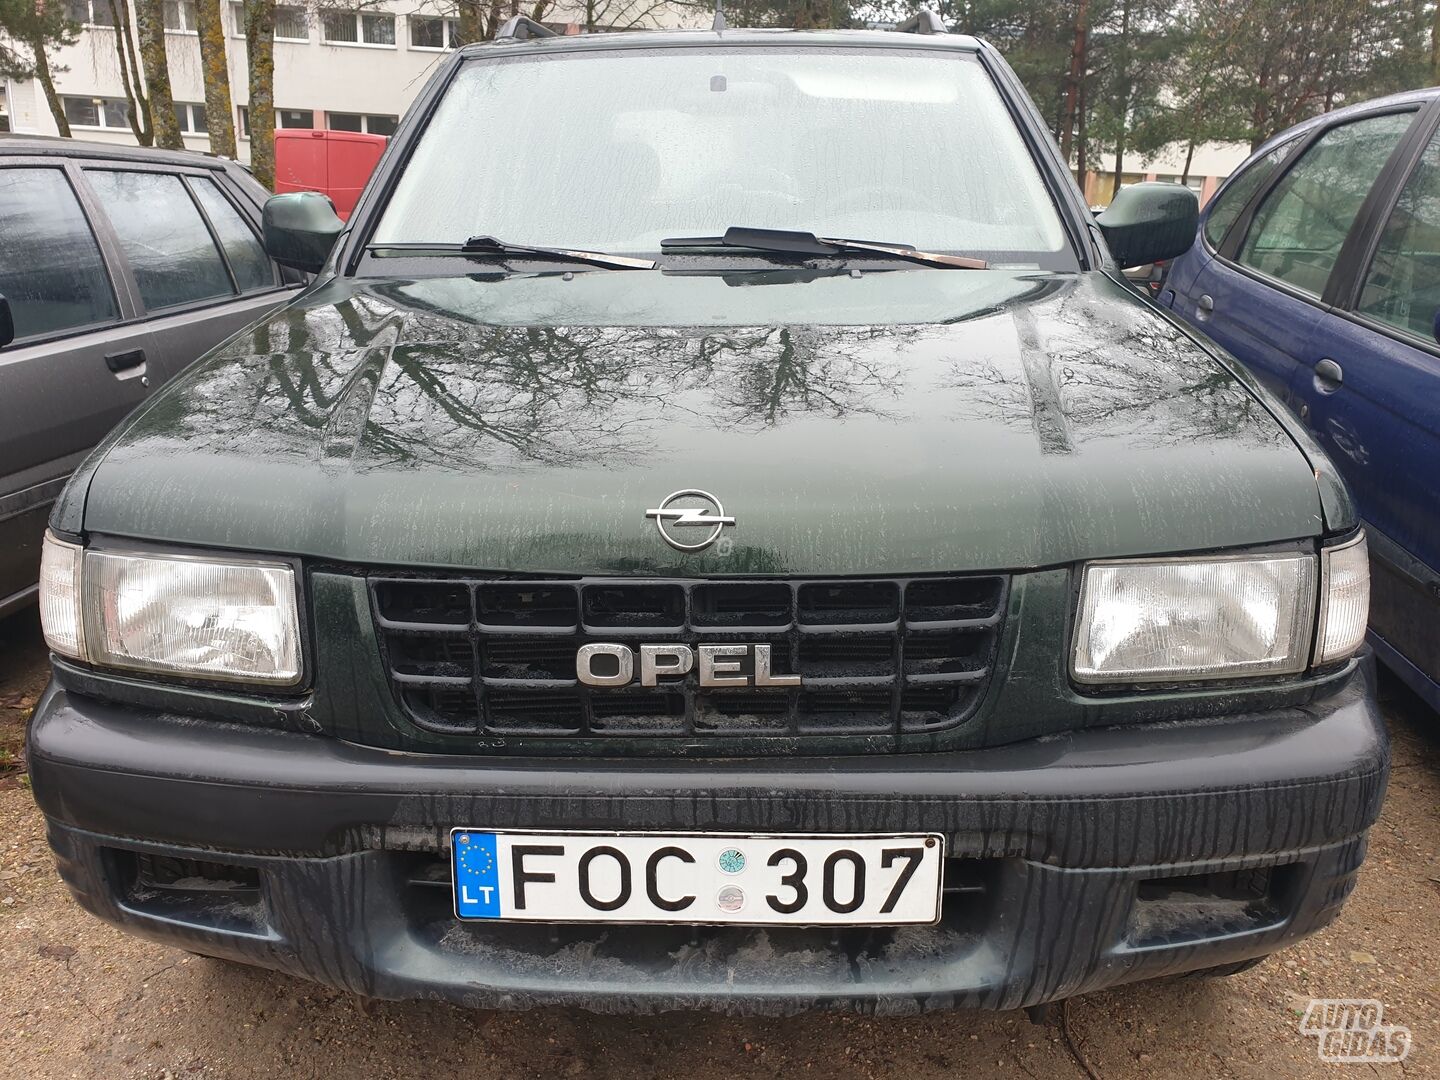 Opel Frontera 2002 y SUV